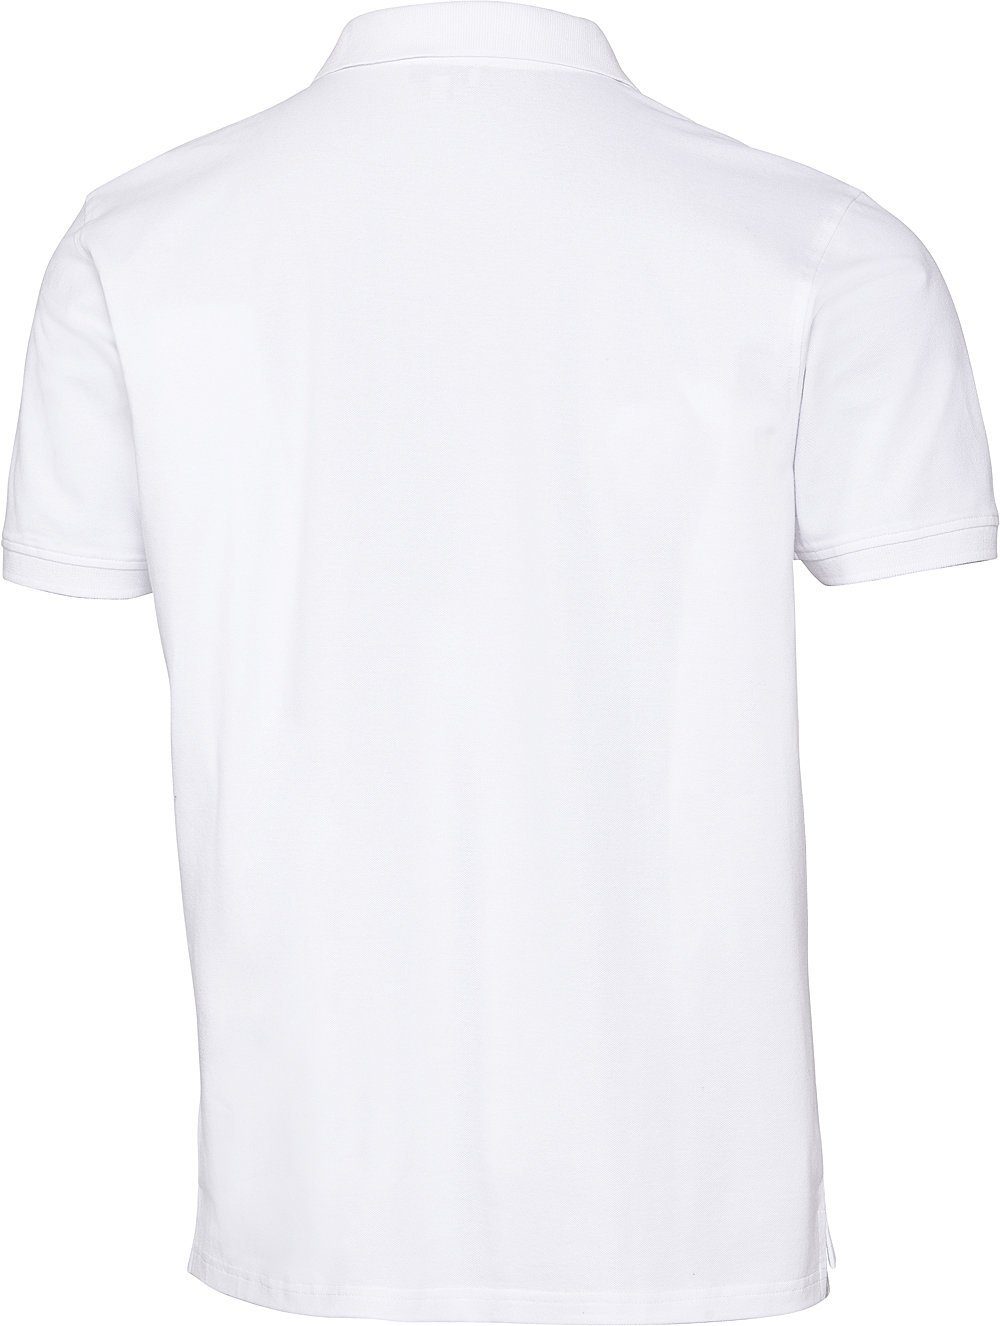 U.S. Poloshirt im Logo-Stick und Kontrastton Assn weiß Piqué-Struktur schöne Polo